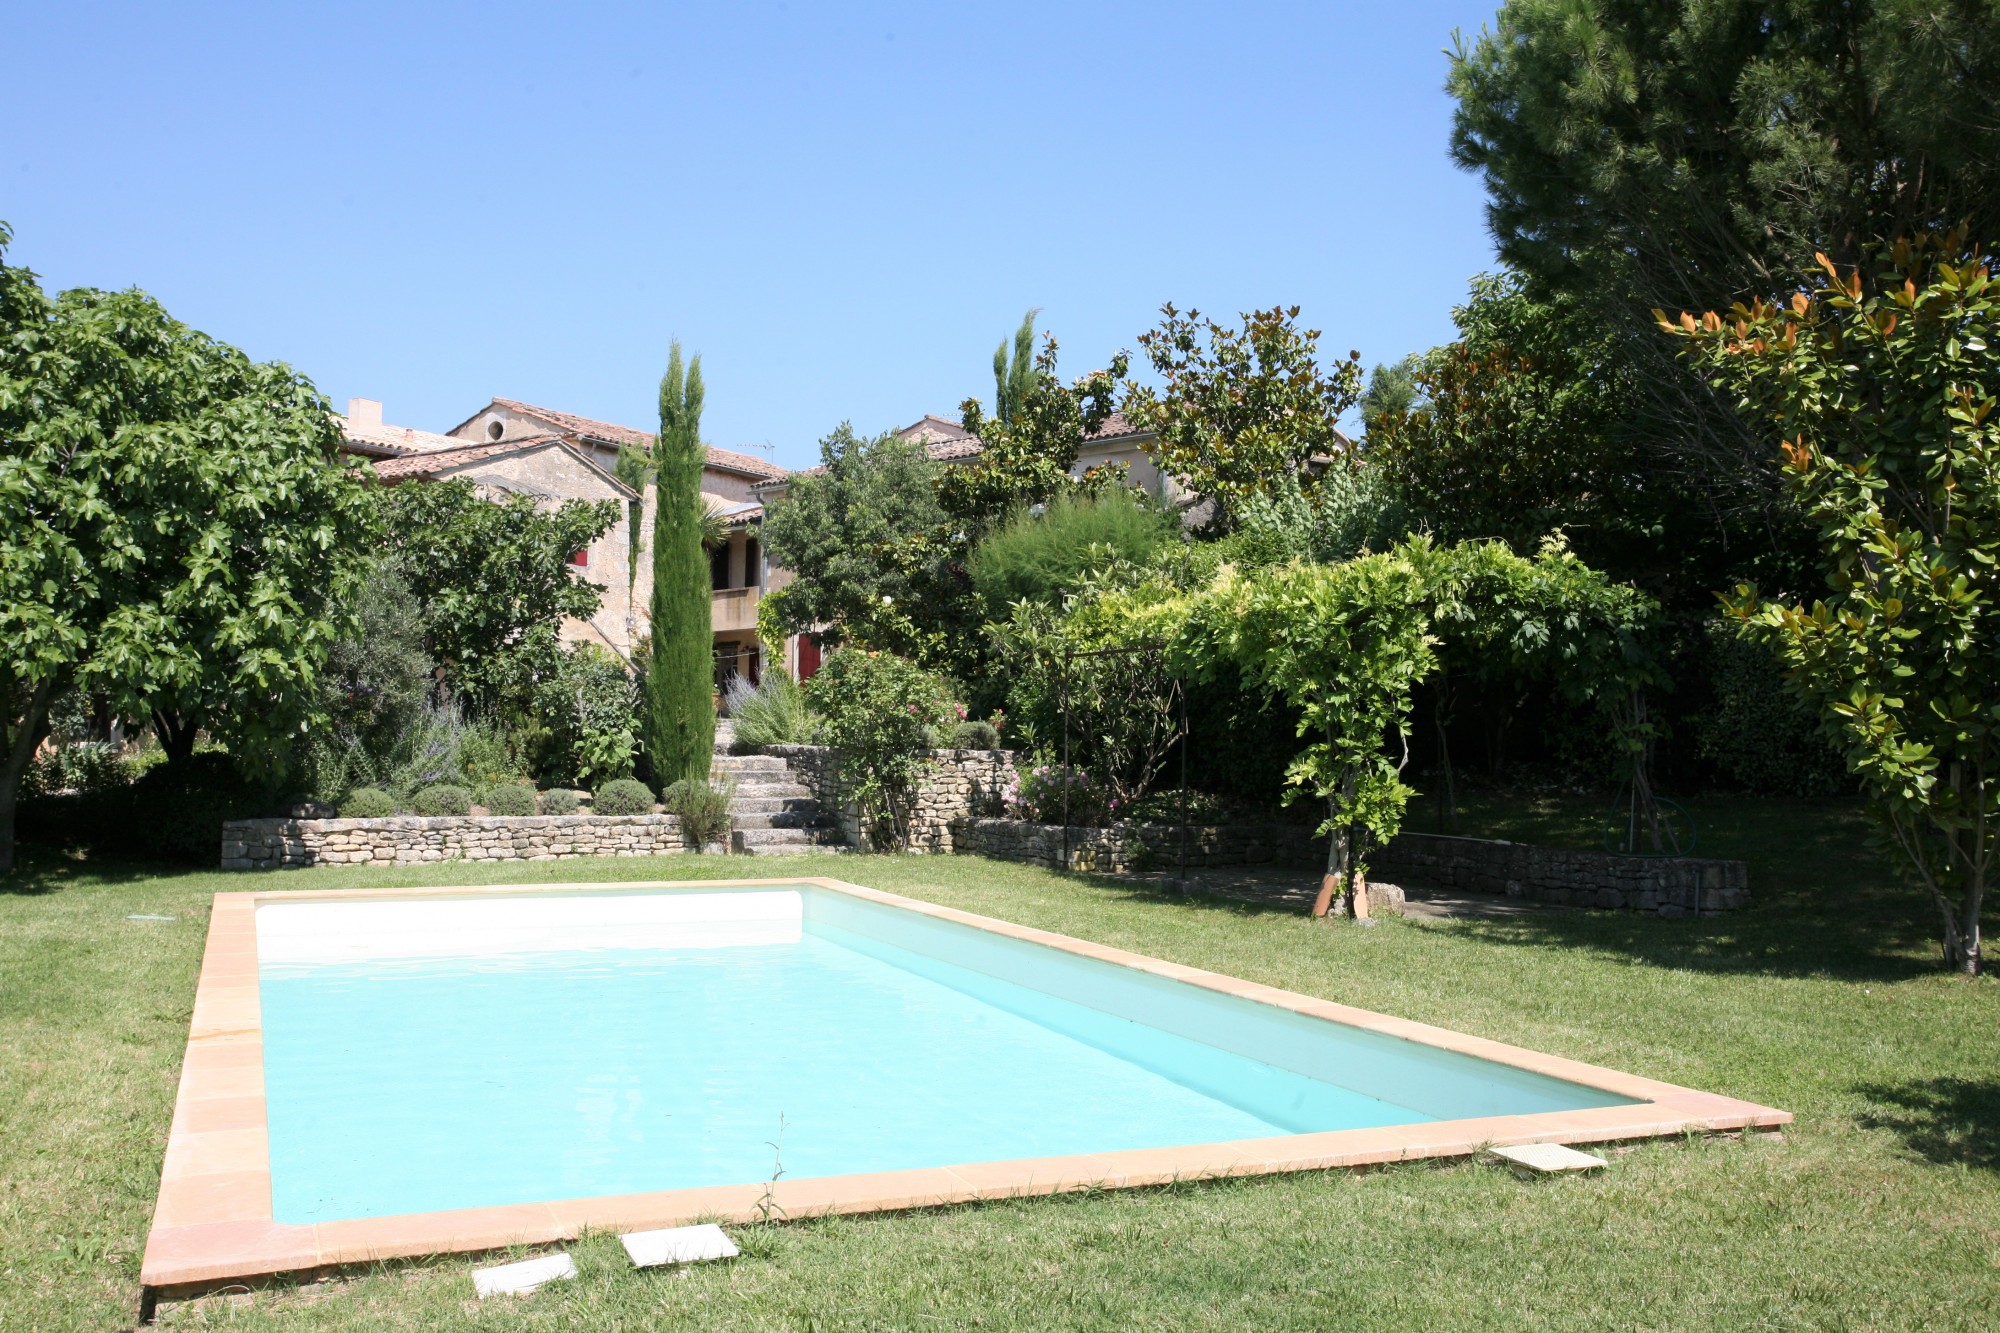 Location proche Goult, authentique mas provencal avec piscine